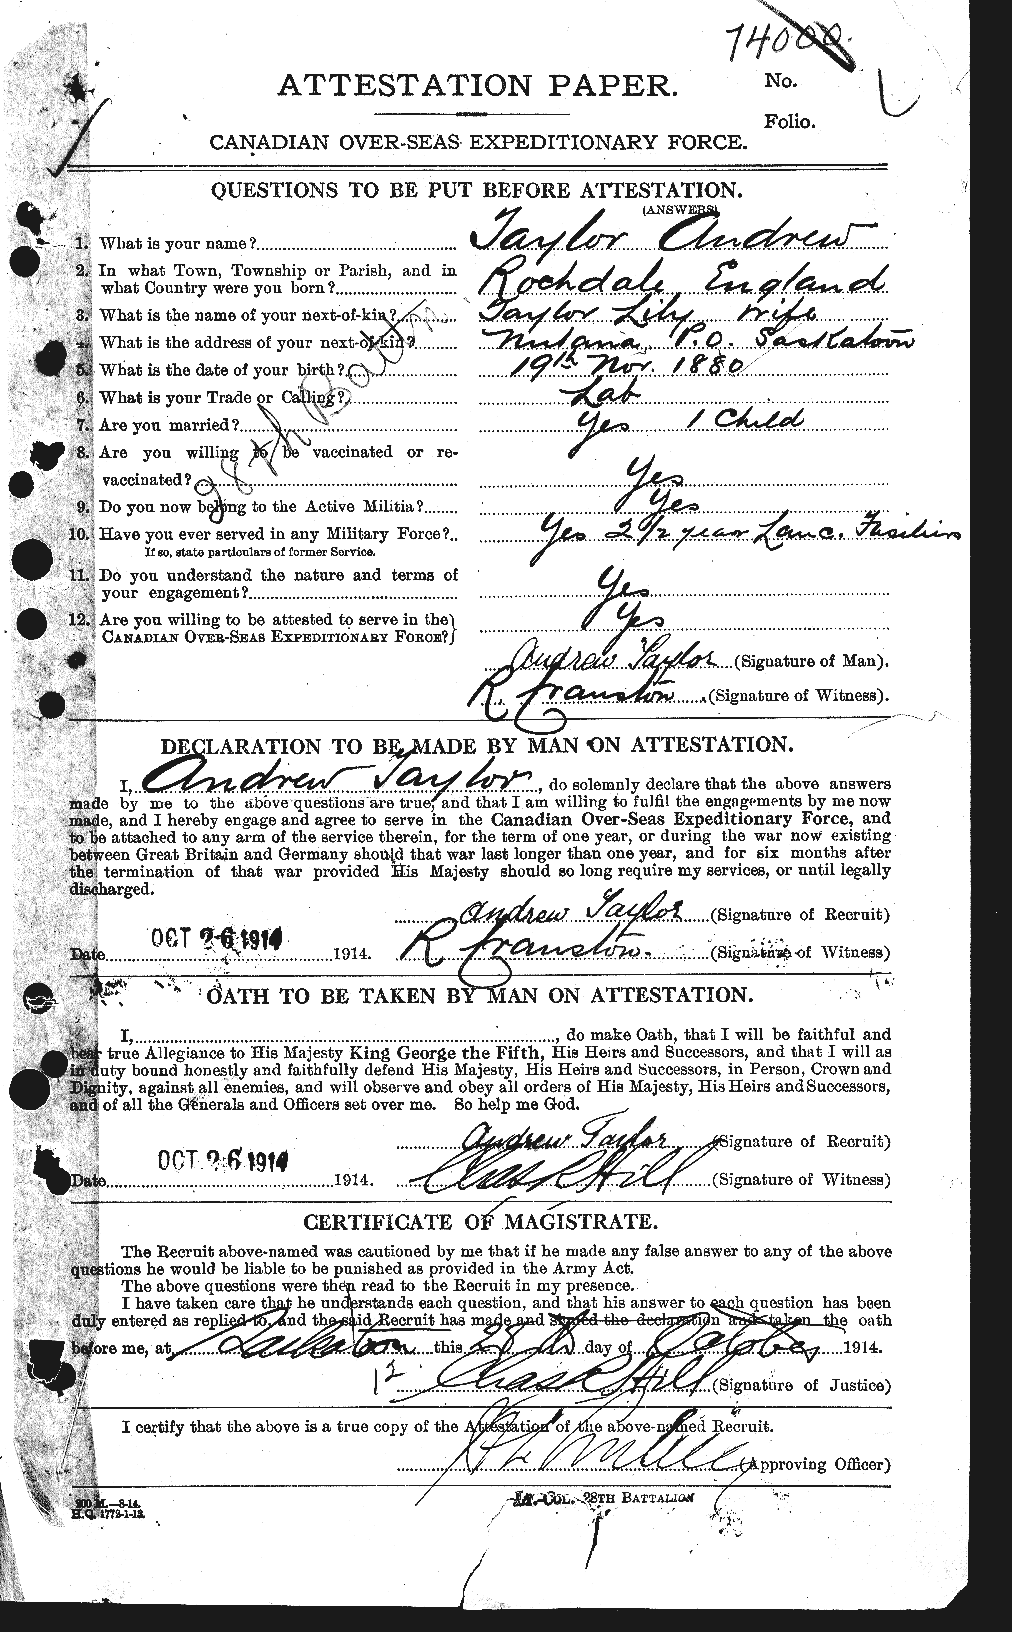 Dossiers du Personnel de la Première Guerre mondiale - CEC 626224a